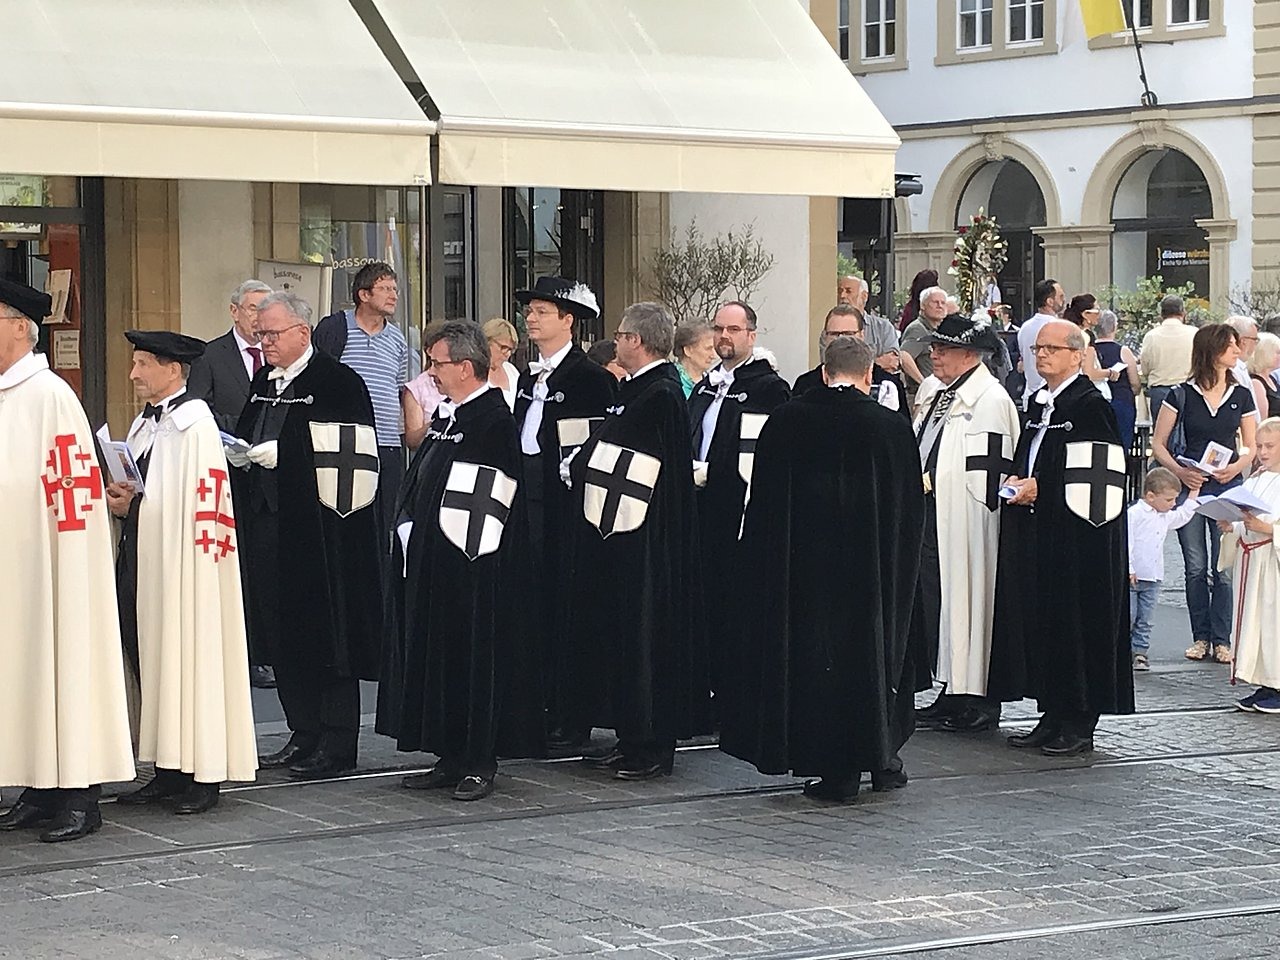 Das Bild zeigt Familiare des Deutschen Ordens sowie Templer in Ordenstracht, die bei einer Prozession in der Stadt teilnehmen. Um sie herum befinden sich weitere Personen.